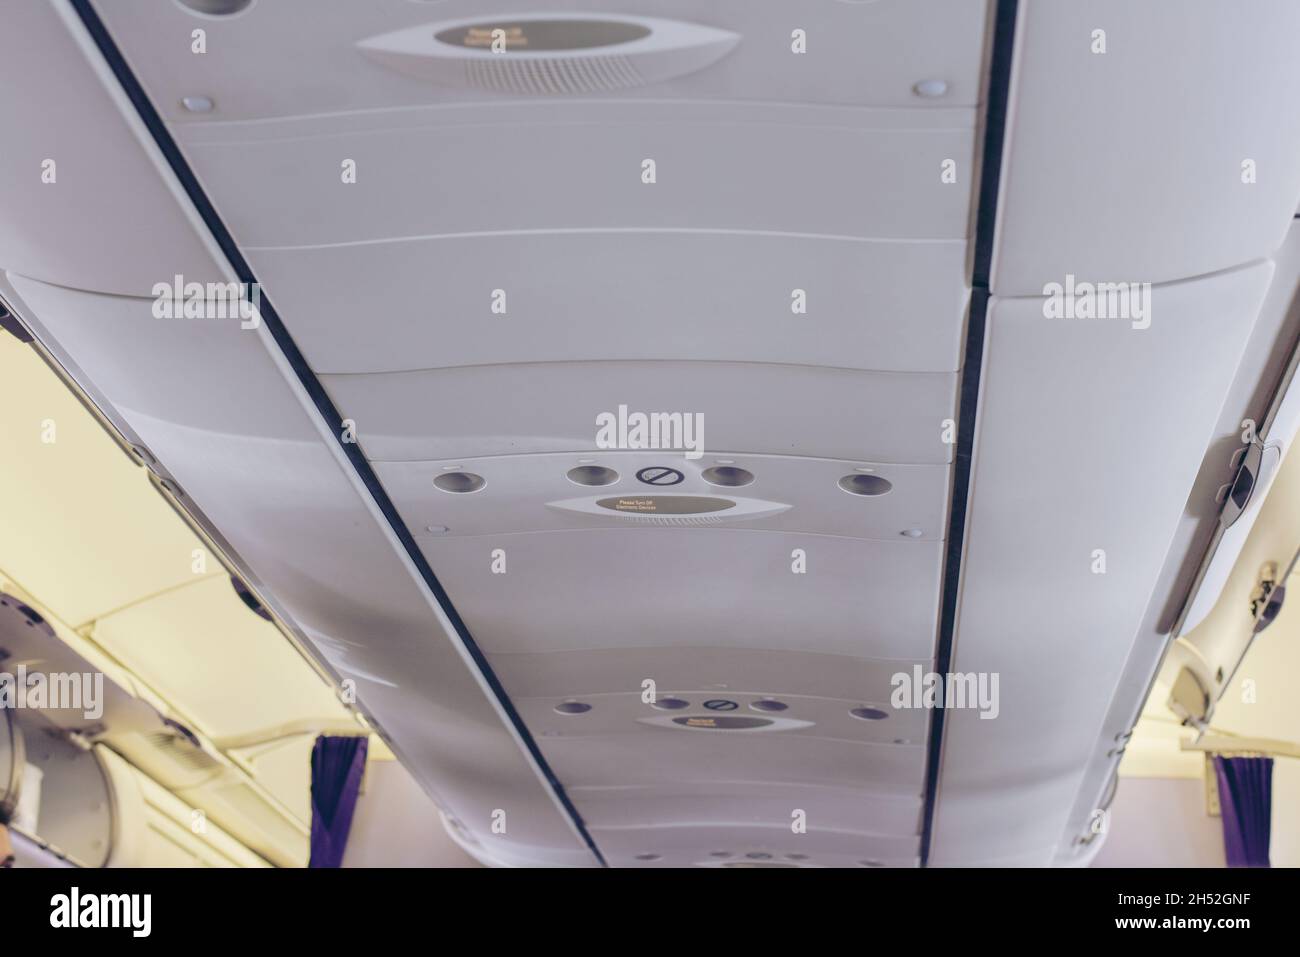 Cabina de Aviones Comerciales con Filas de Asientos en el pasillo.Interior del Avión con Pasajeros en Asientos.Equipaje de Carro en la Plataforma Superior sobre Cabezal Foto de stock